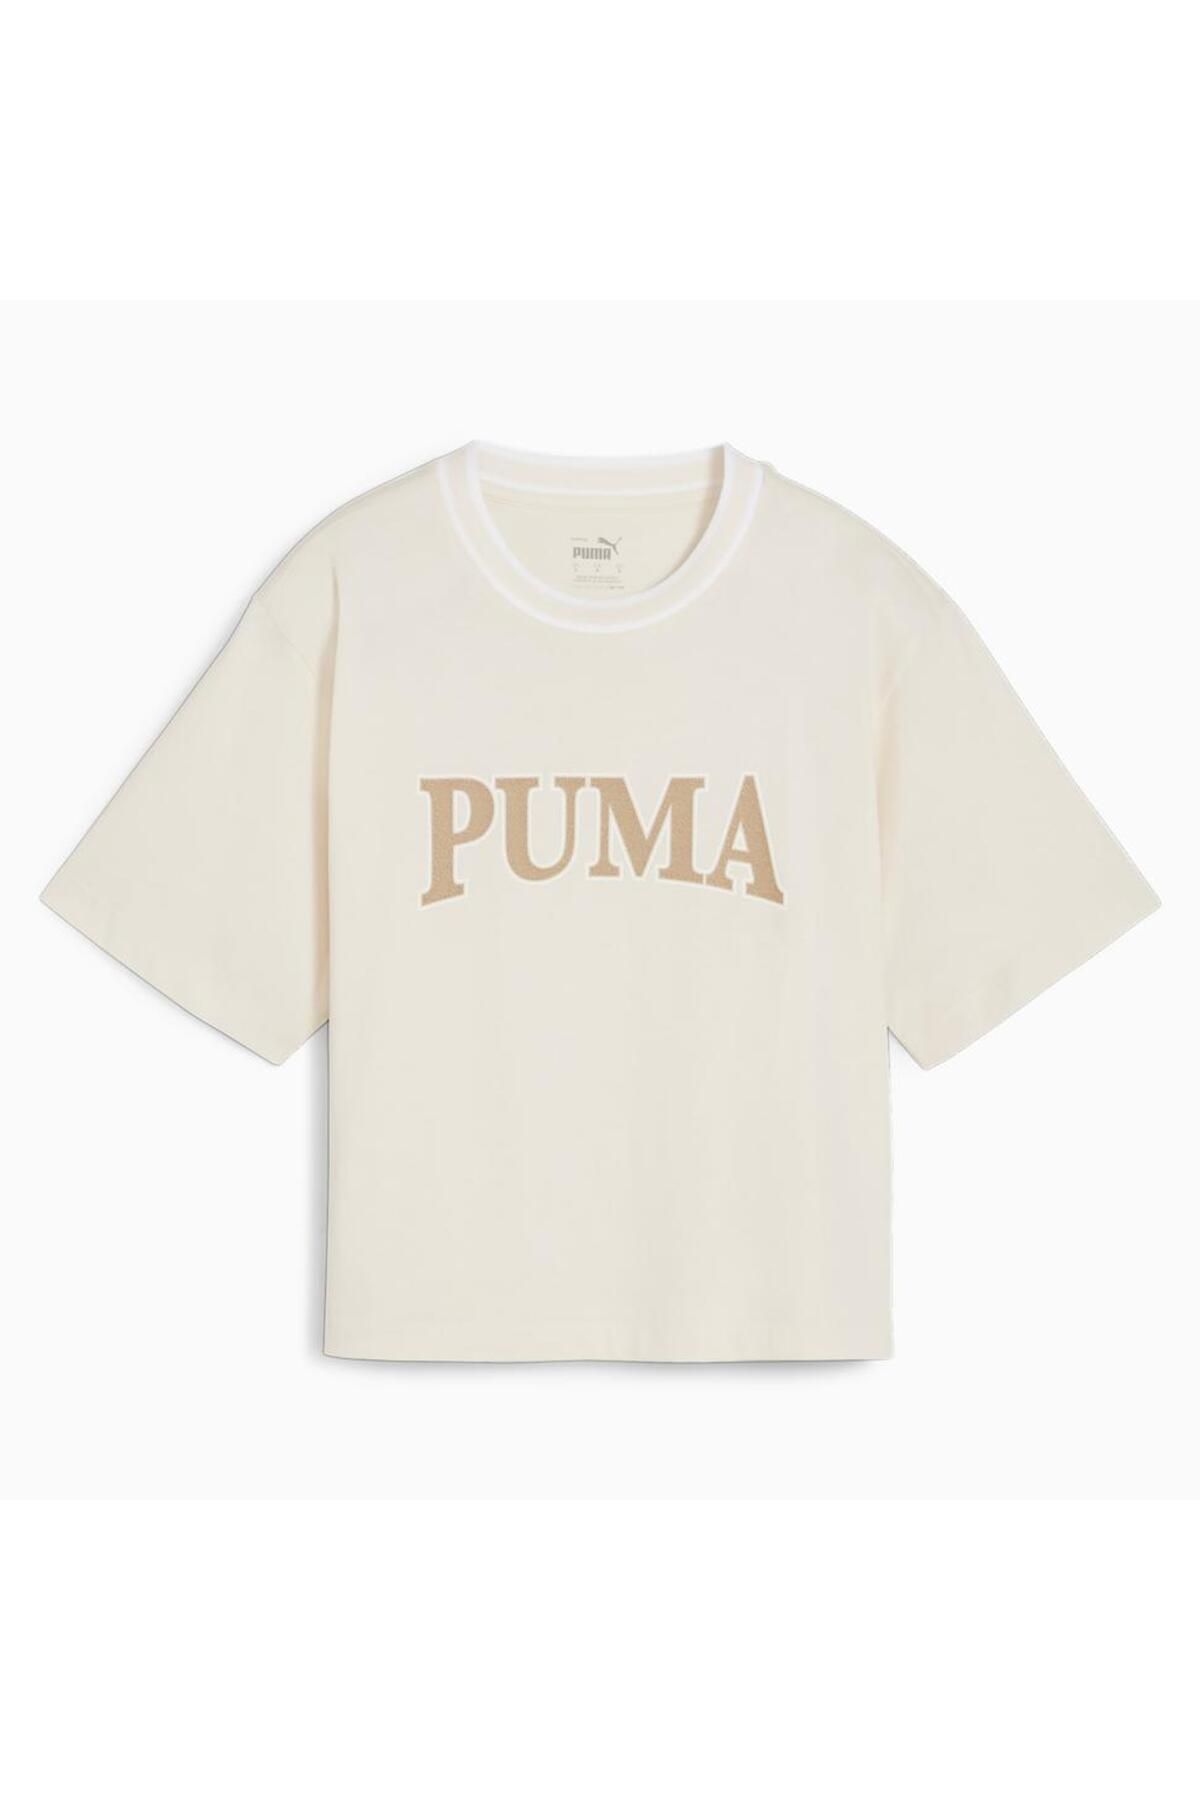 Puma PUMA SQUAD Graphic Tee Bej Kadın Tshirt